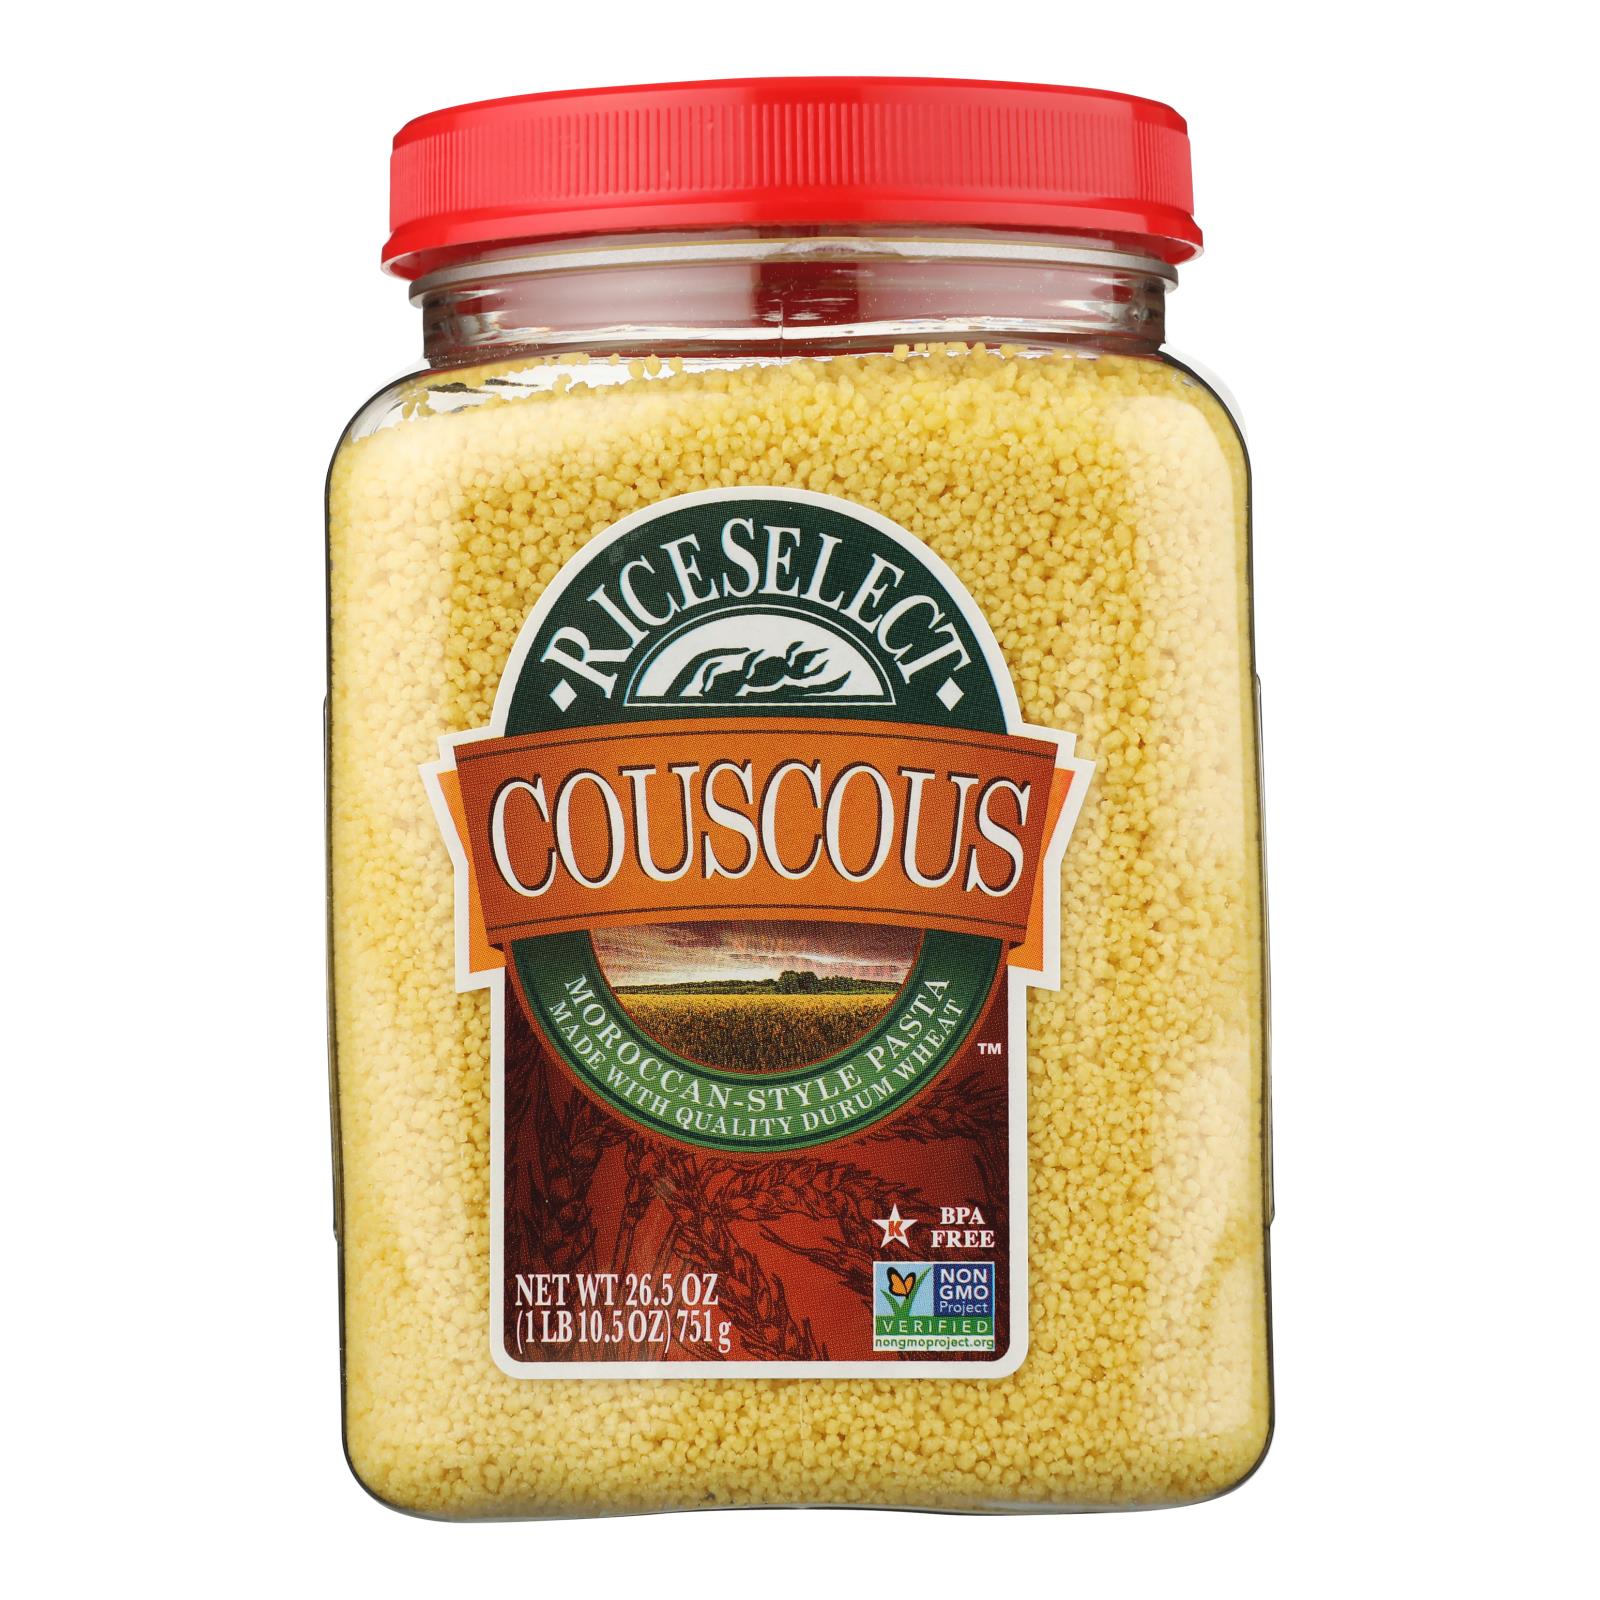 Rice Select Couscous - Original - Case Of 4 - 26.5 Oz.